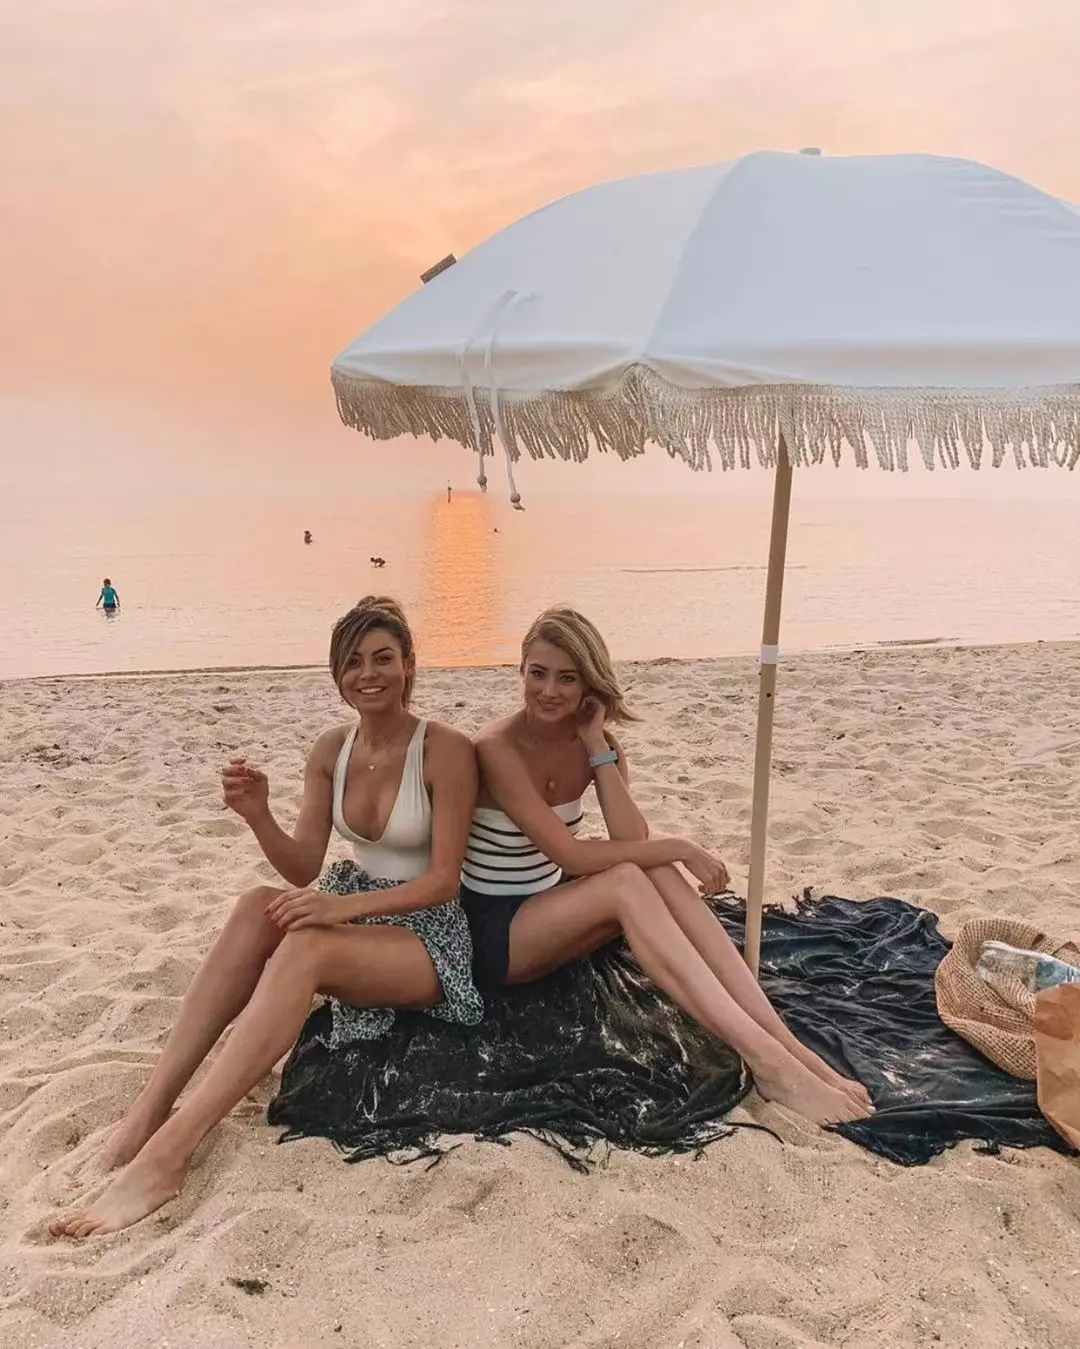 Распродажа, открытый портативный складной индивидуальный дизайн, большой зонт для патио, бассейна, Солнцезащитный зонт для пляжа